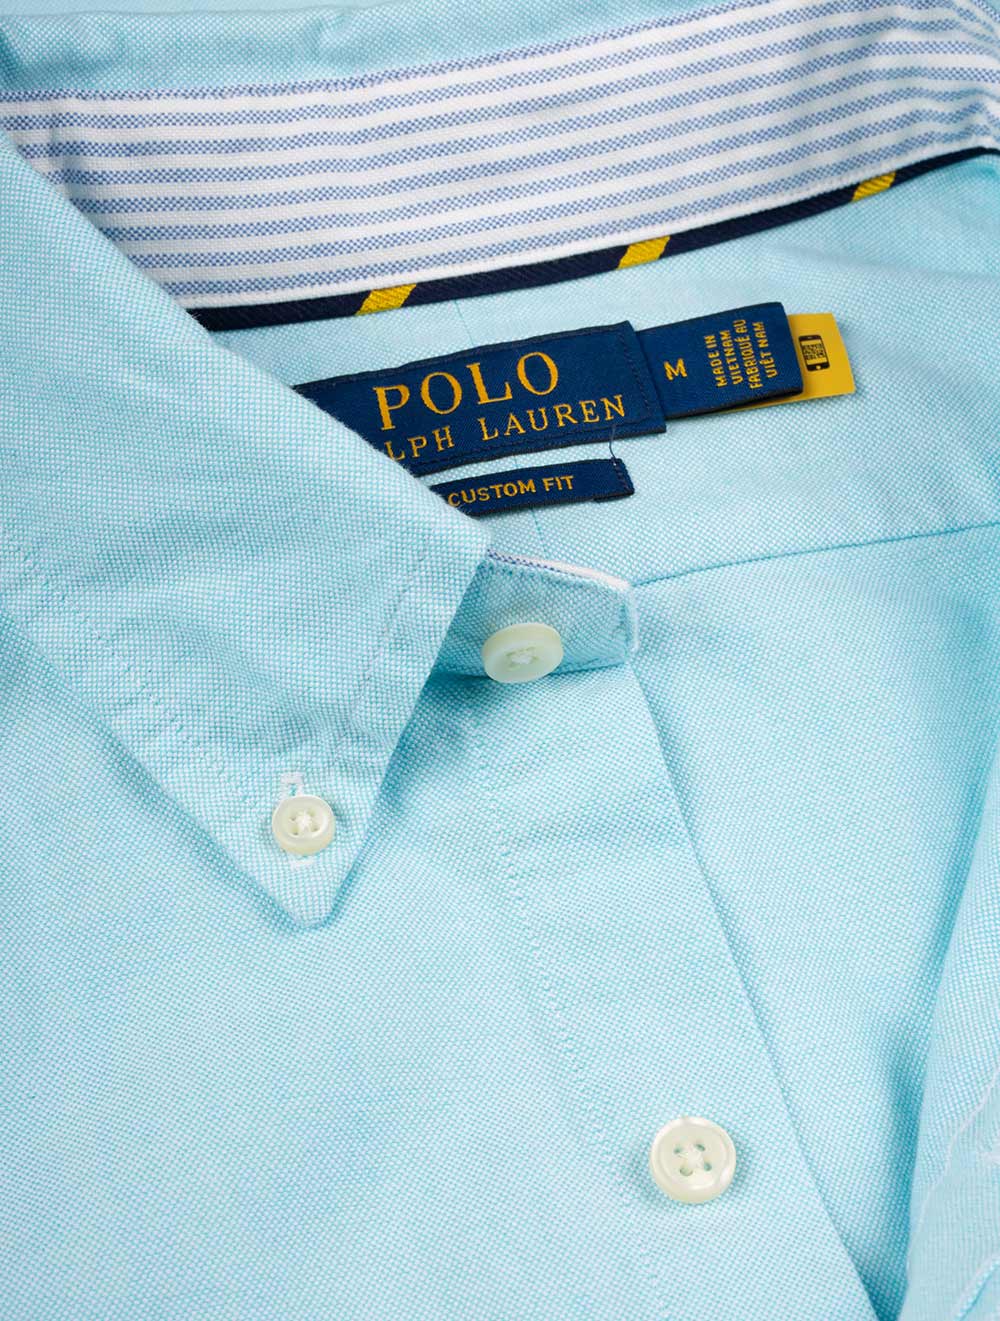 Buttondown Oxford Shirt Aegean Blue